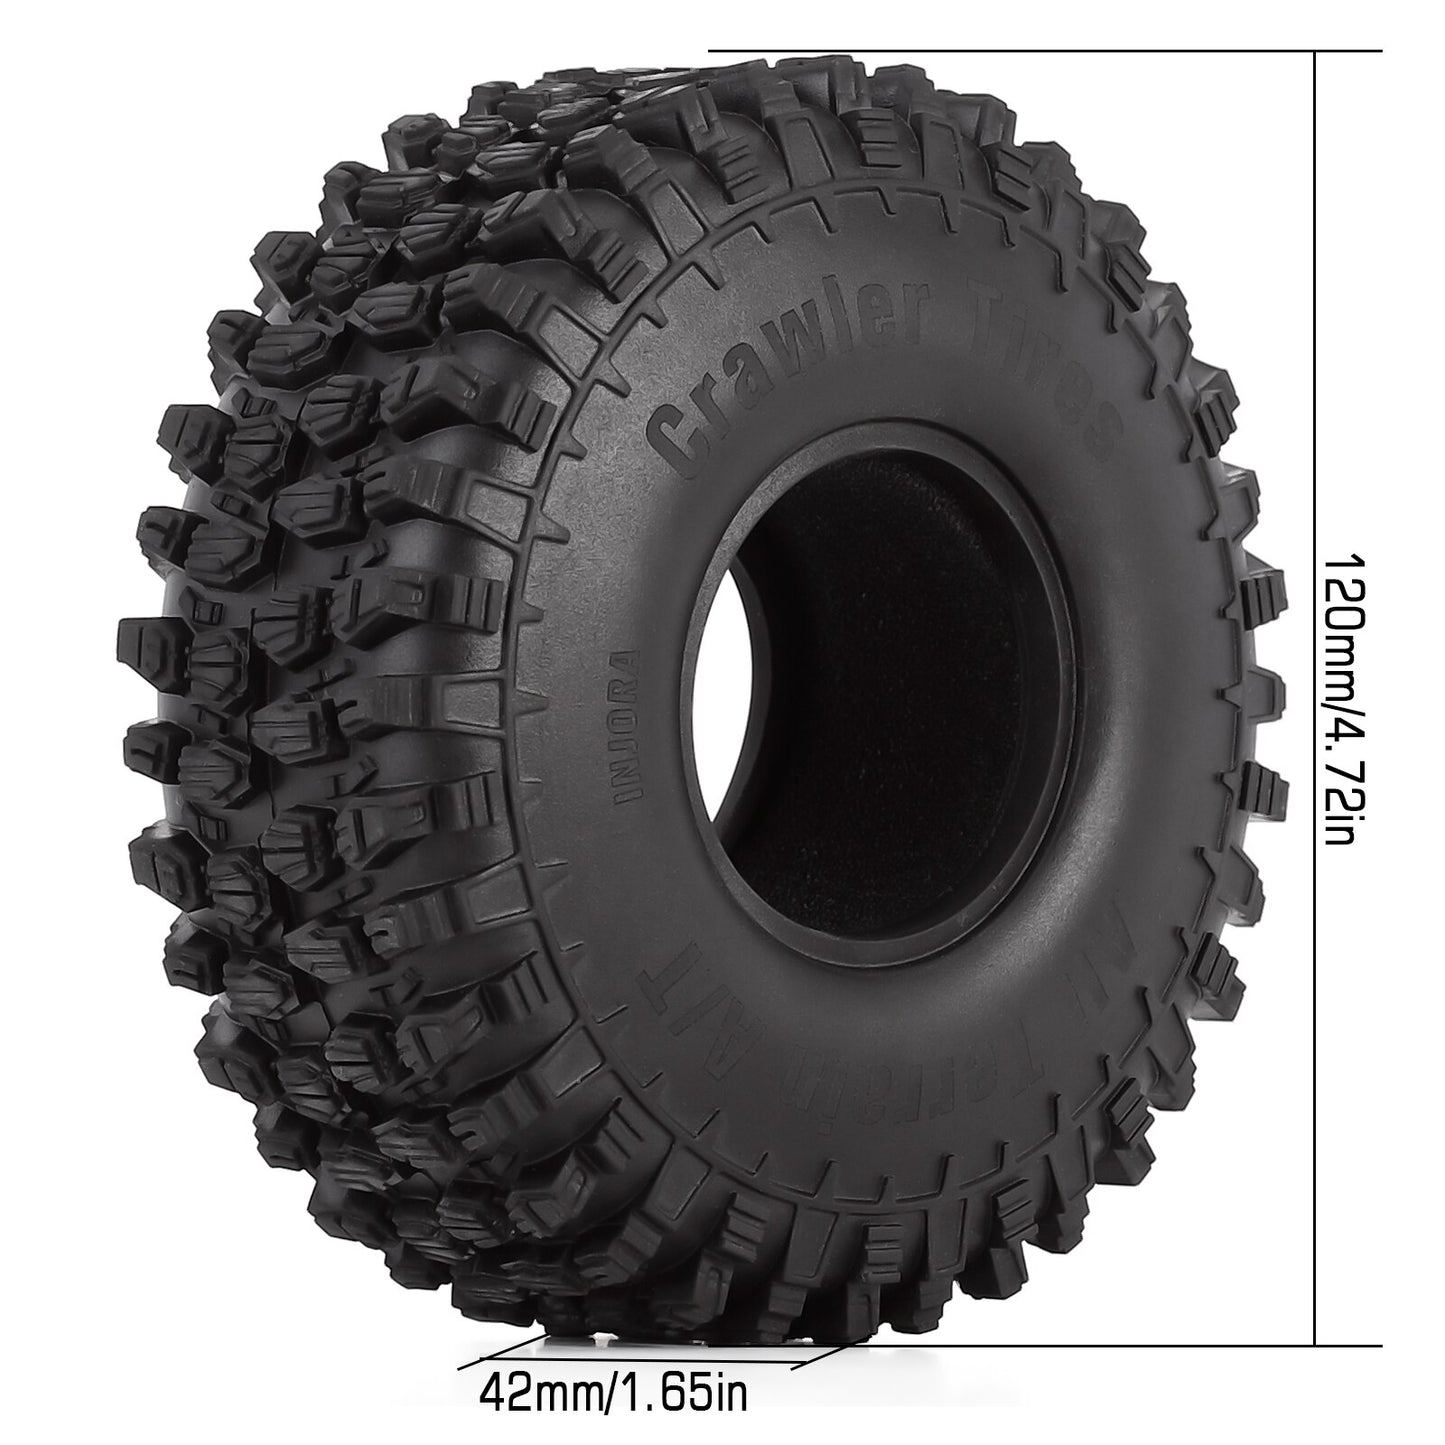 INJORA 4PCS 120*42mm 1.9" Rubber All Terrain Wheel Tires for 1:10 RC Rock Crawler Car TRX4 Axial SCX10 Redcat Gen8